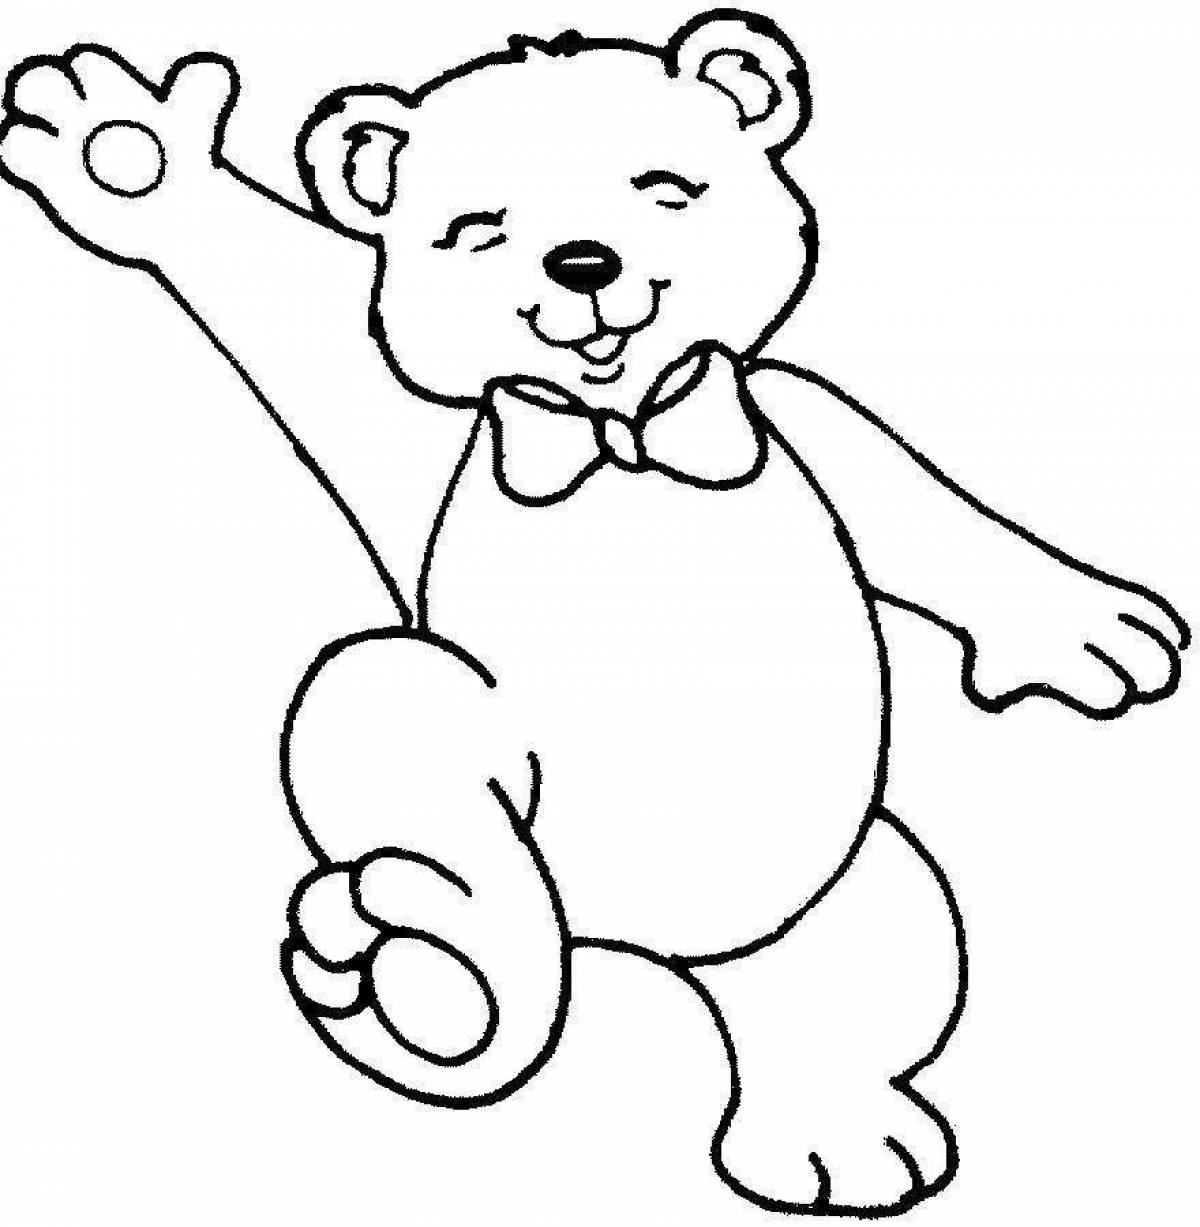 Fun teddy bear drawing for kids